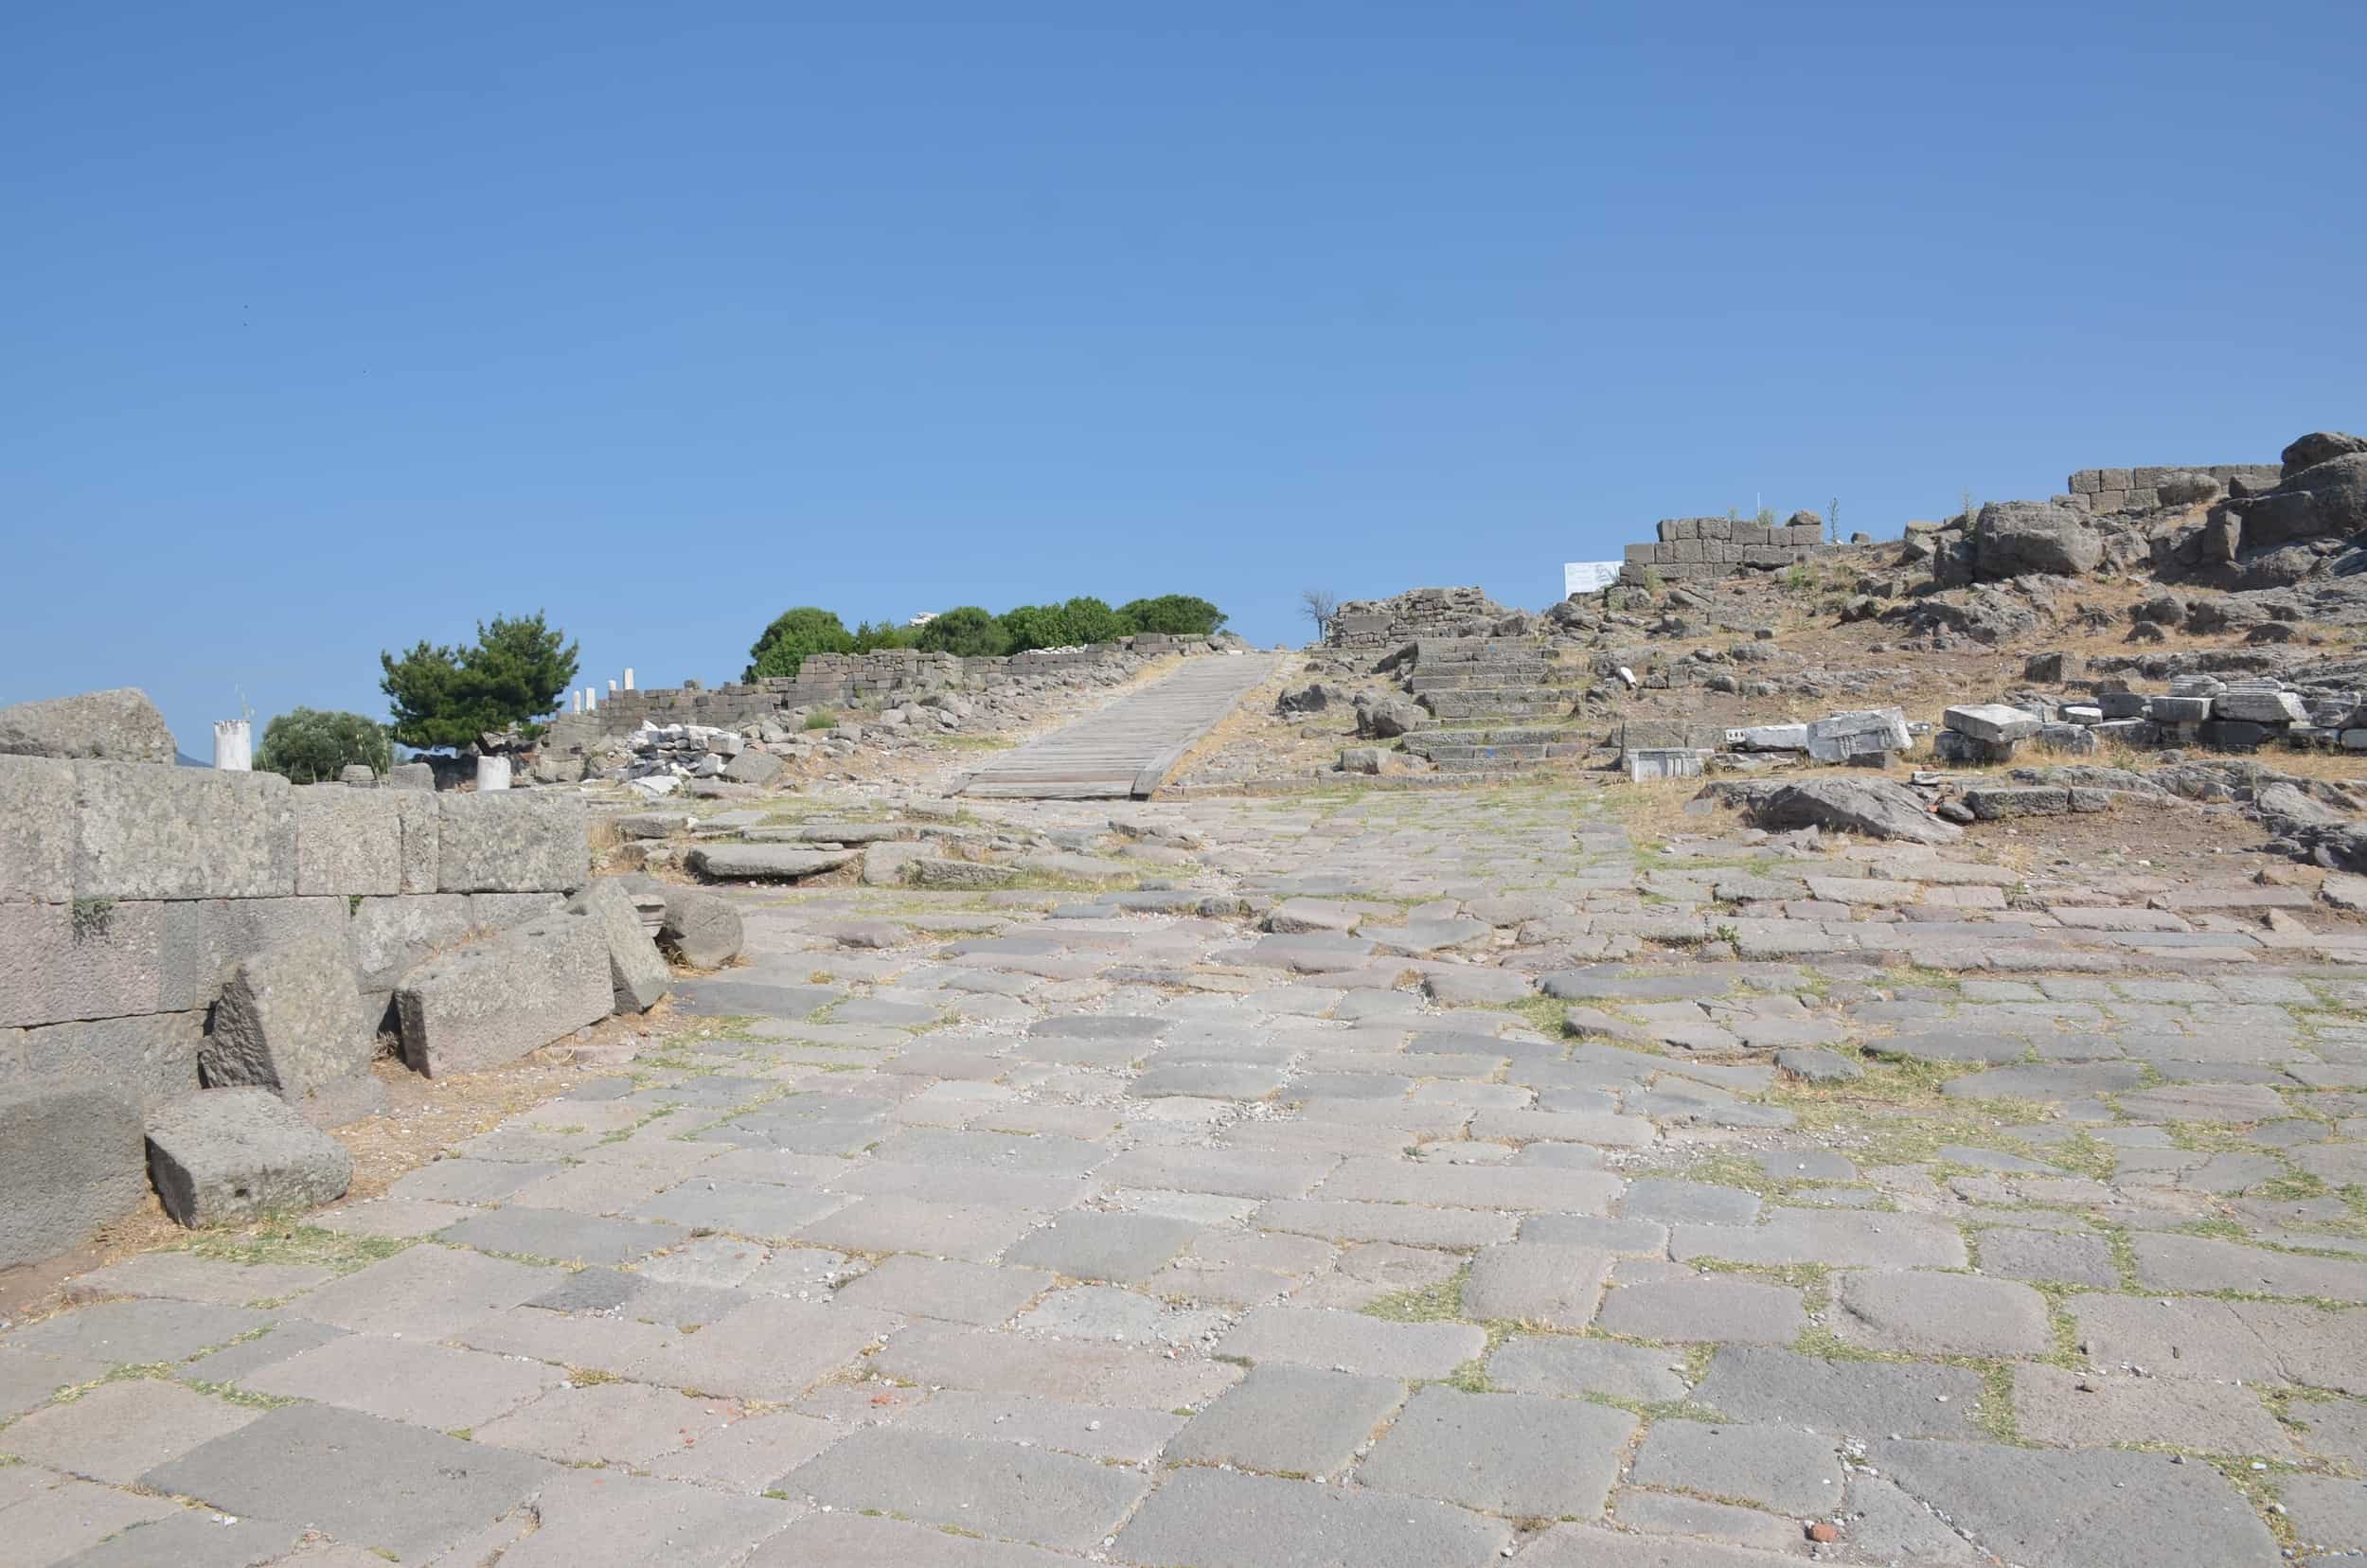 Path through the ruins at the Pergamon Acropolis